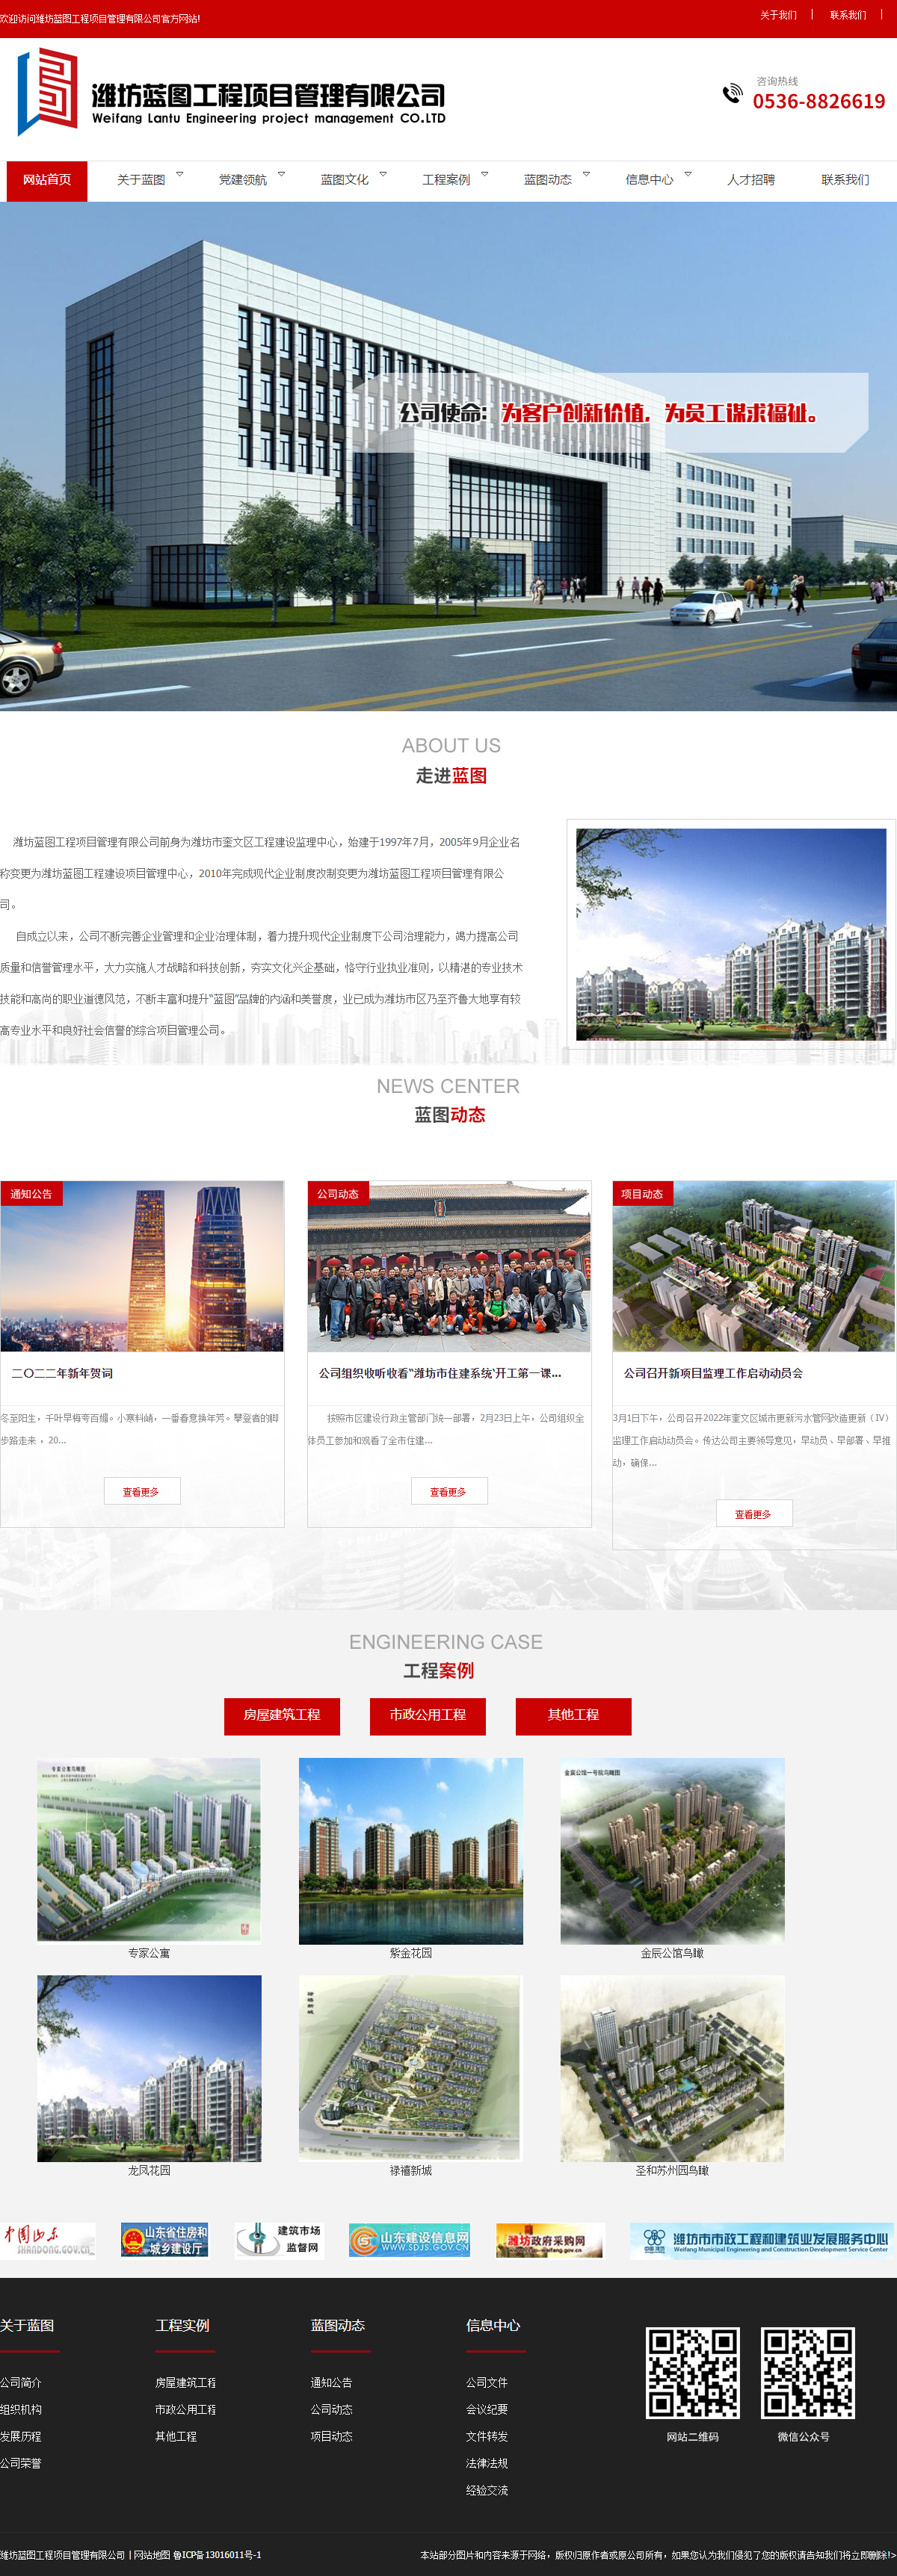 潍坊蓝图工程项目管理有限公司网站案例